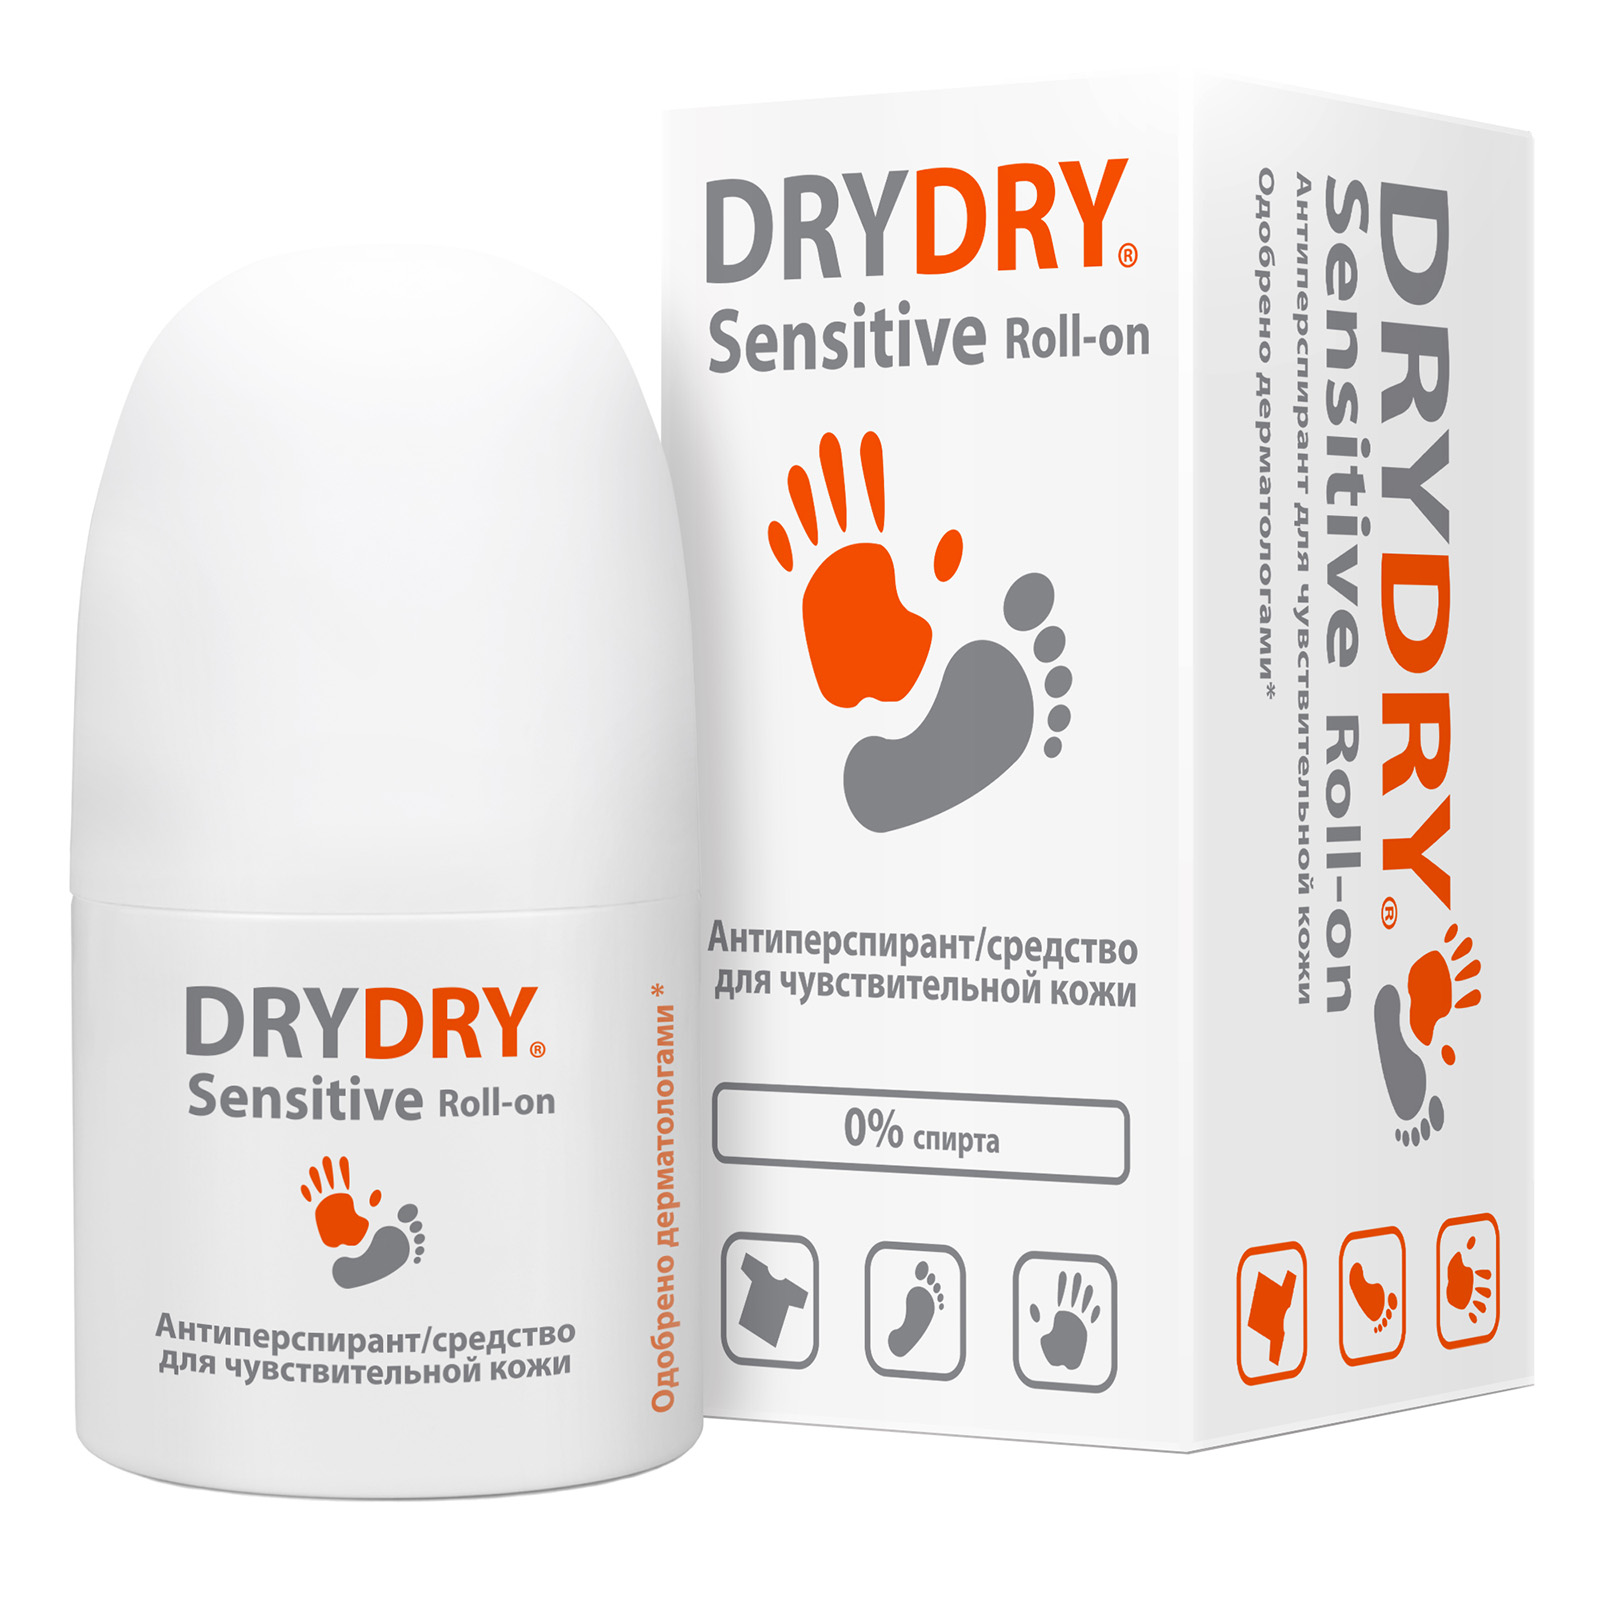 Dry Dry Средство от обильного потоотделения, 50 мл. фото